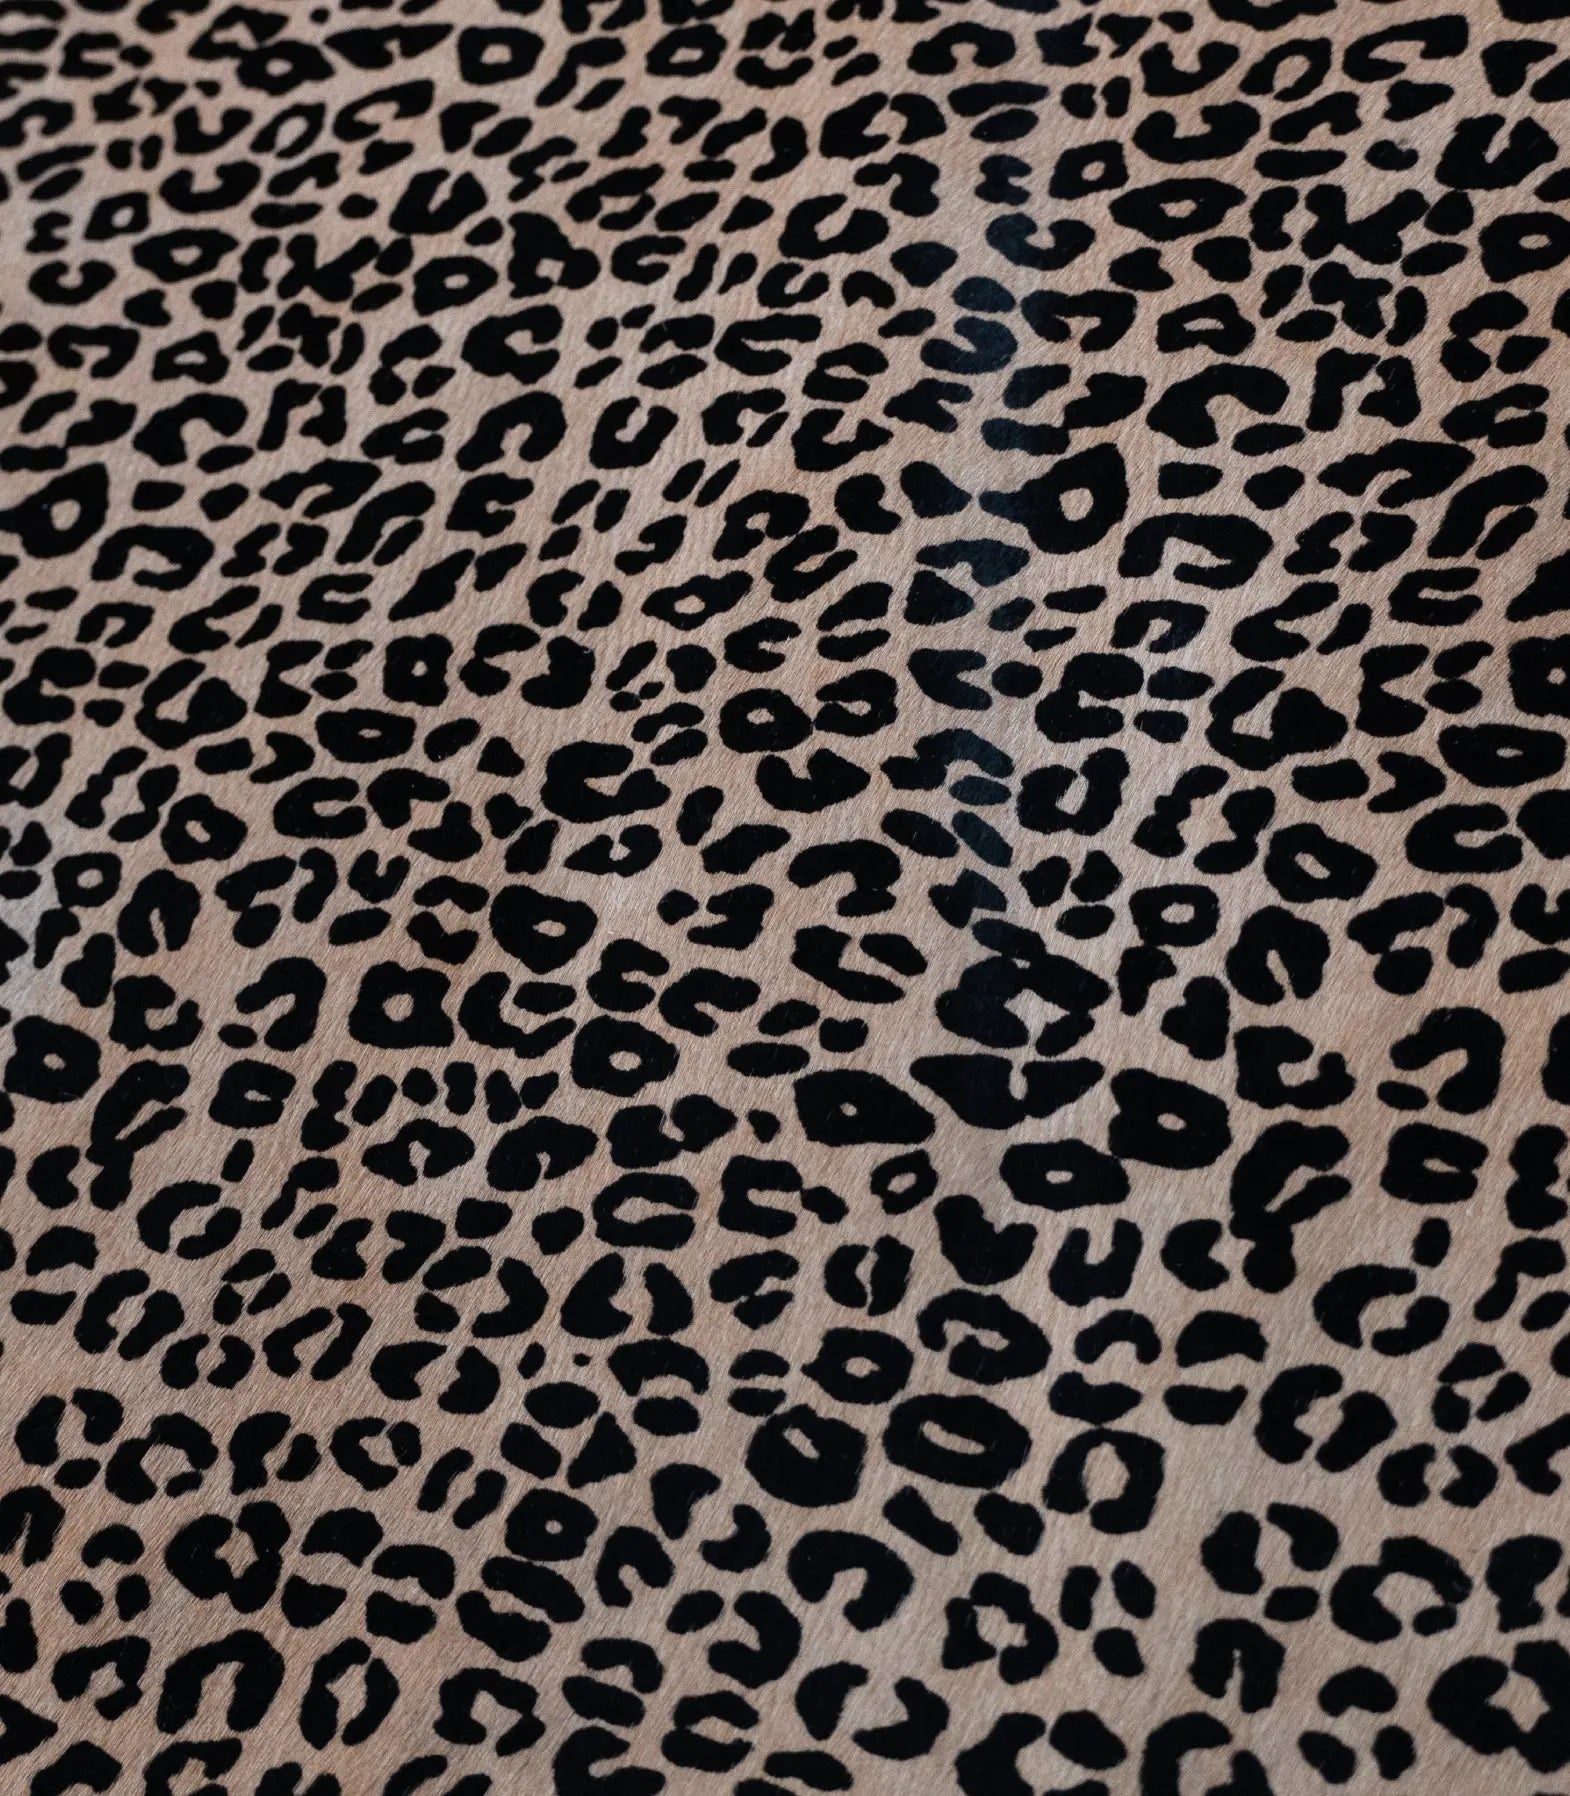 Calfskin Hair On leather hide Baby Leopard Print Long Silky Hair VERY RARE!!